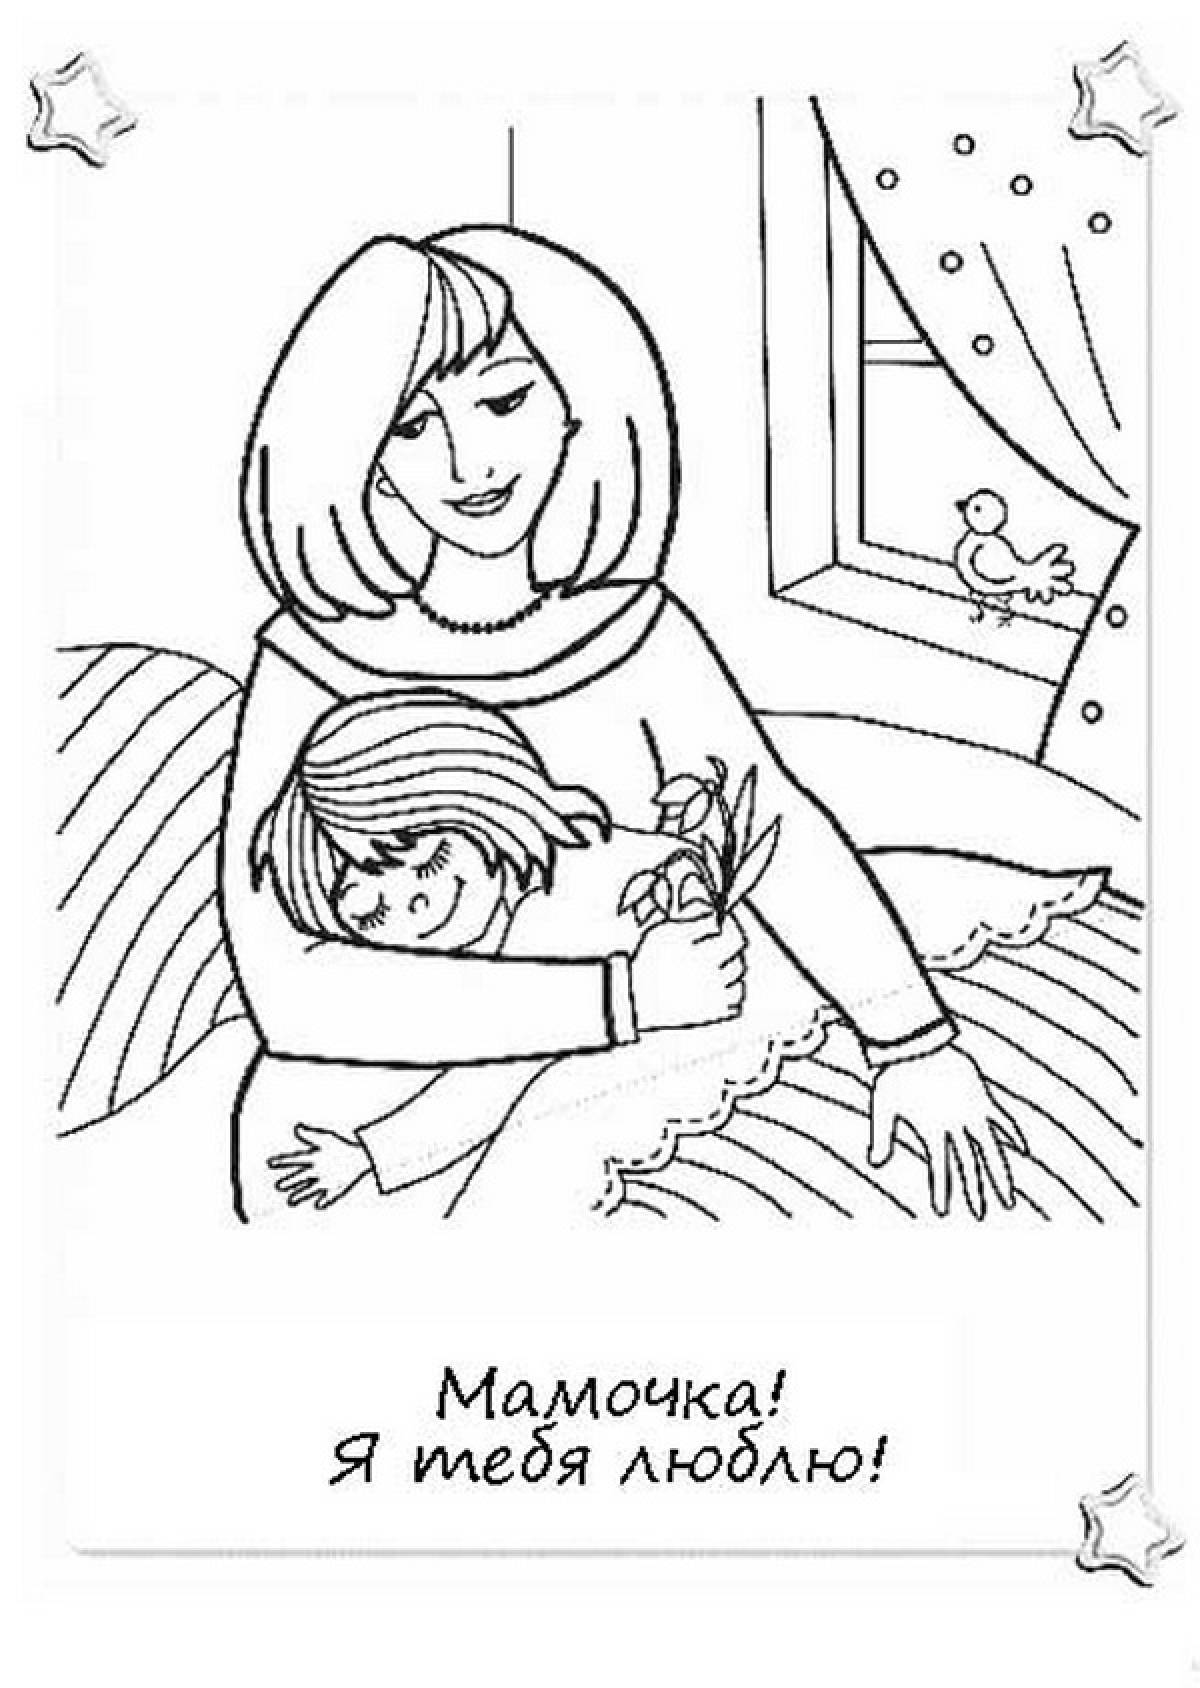 Разукрашивать маму. Раскраска ко Дню матери. Рисунок для мамы раскраска. Рисунок маме на день матери. Мама раскраска для детей.